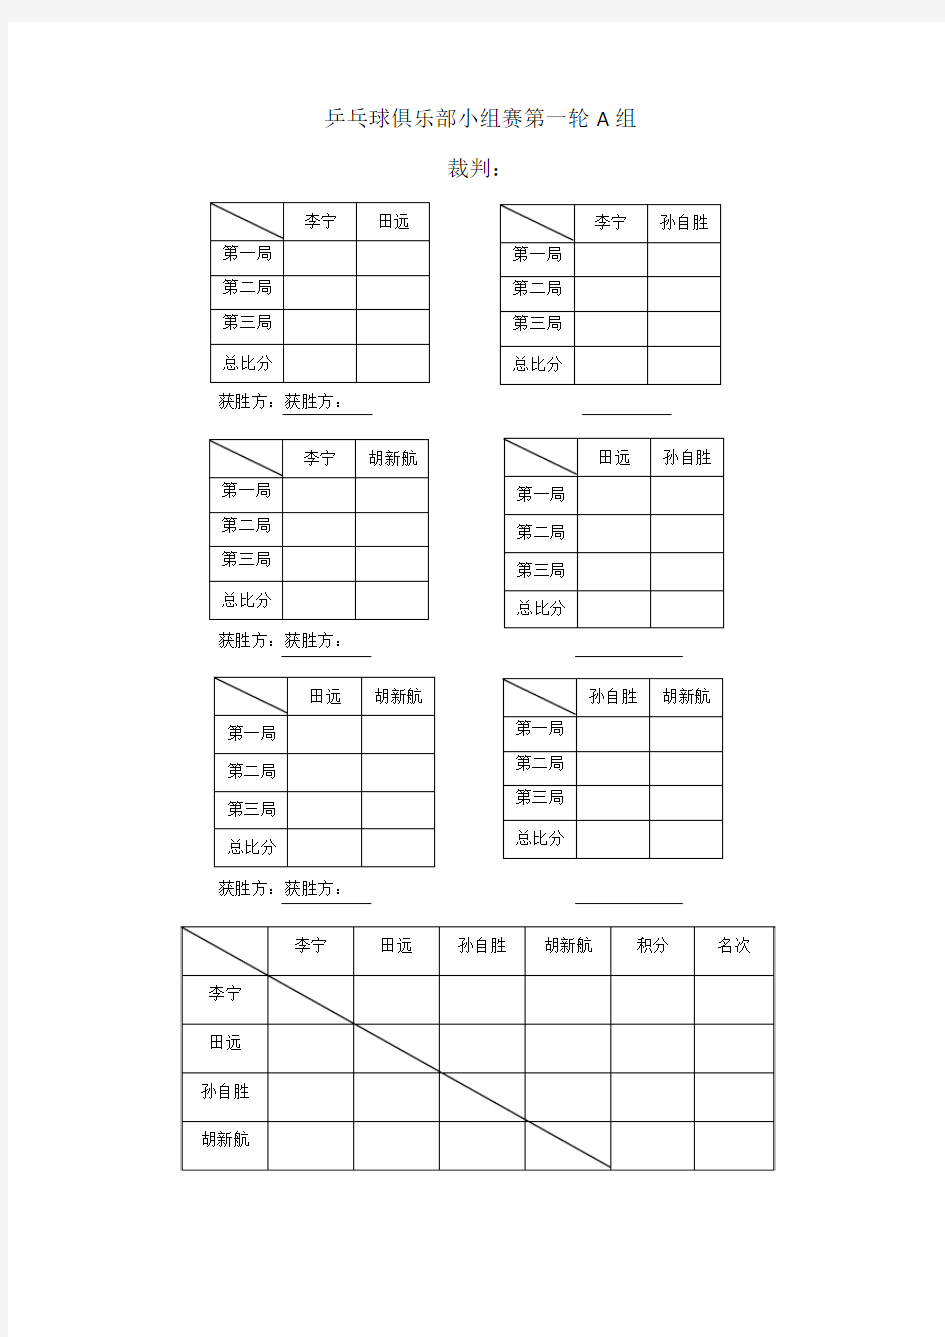 乒乓排位小组赛表(32人)